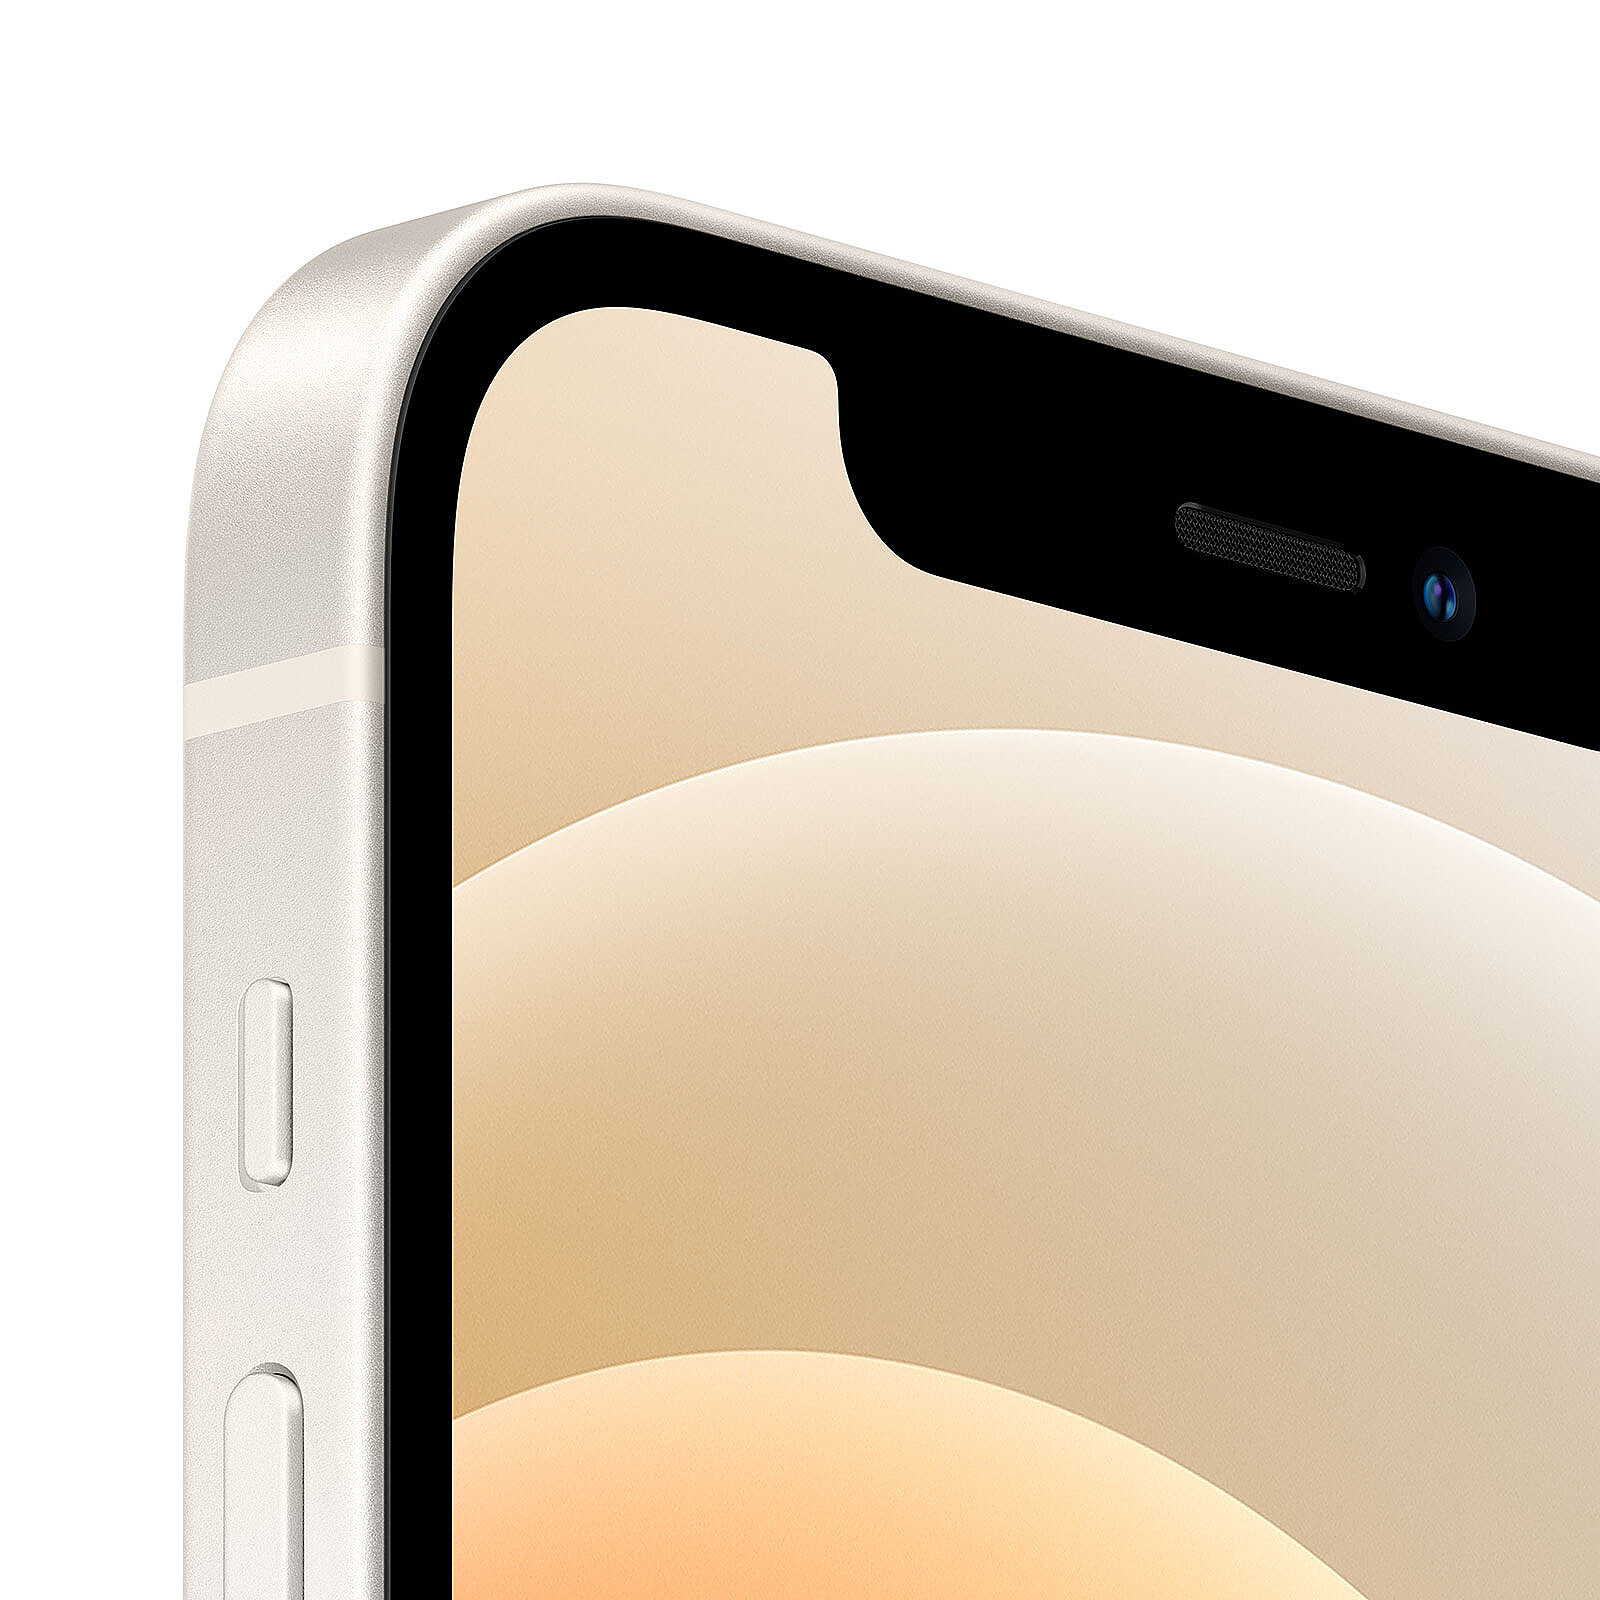 iPhone 12/12 mini : toutes ses caractéristiques, les prix et notre avis